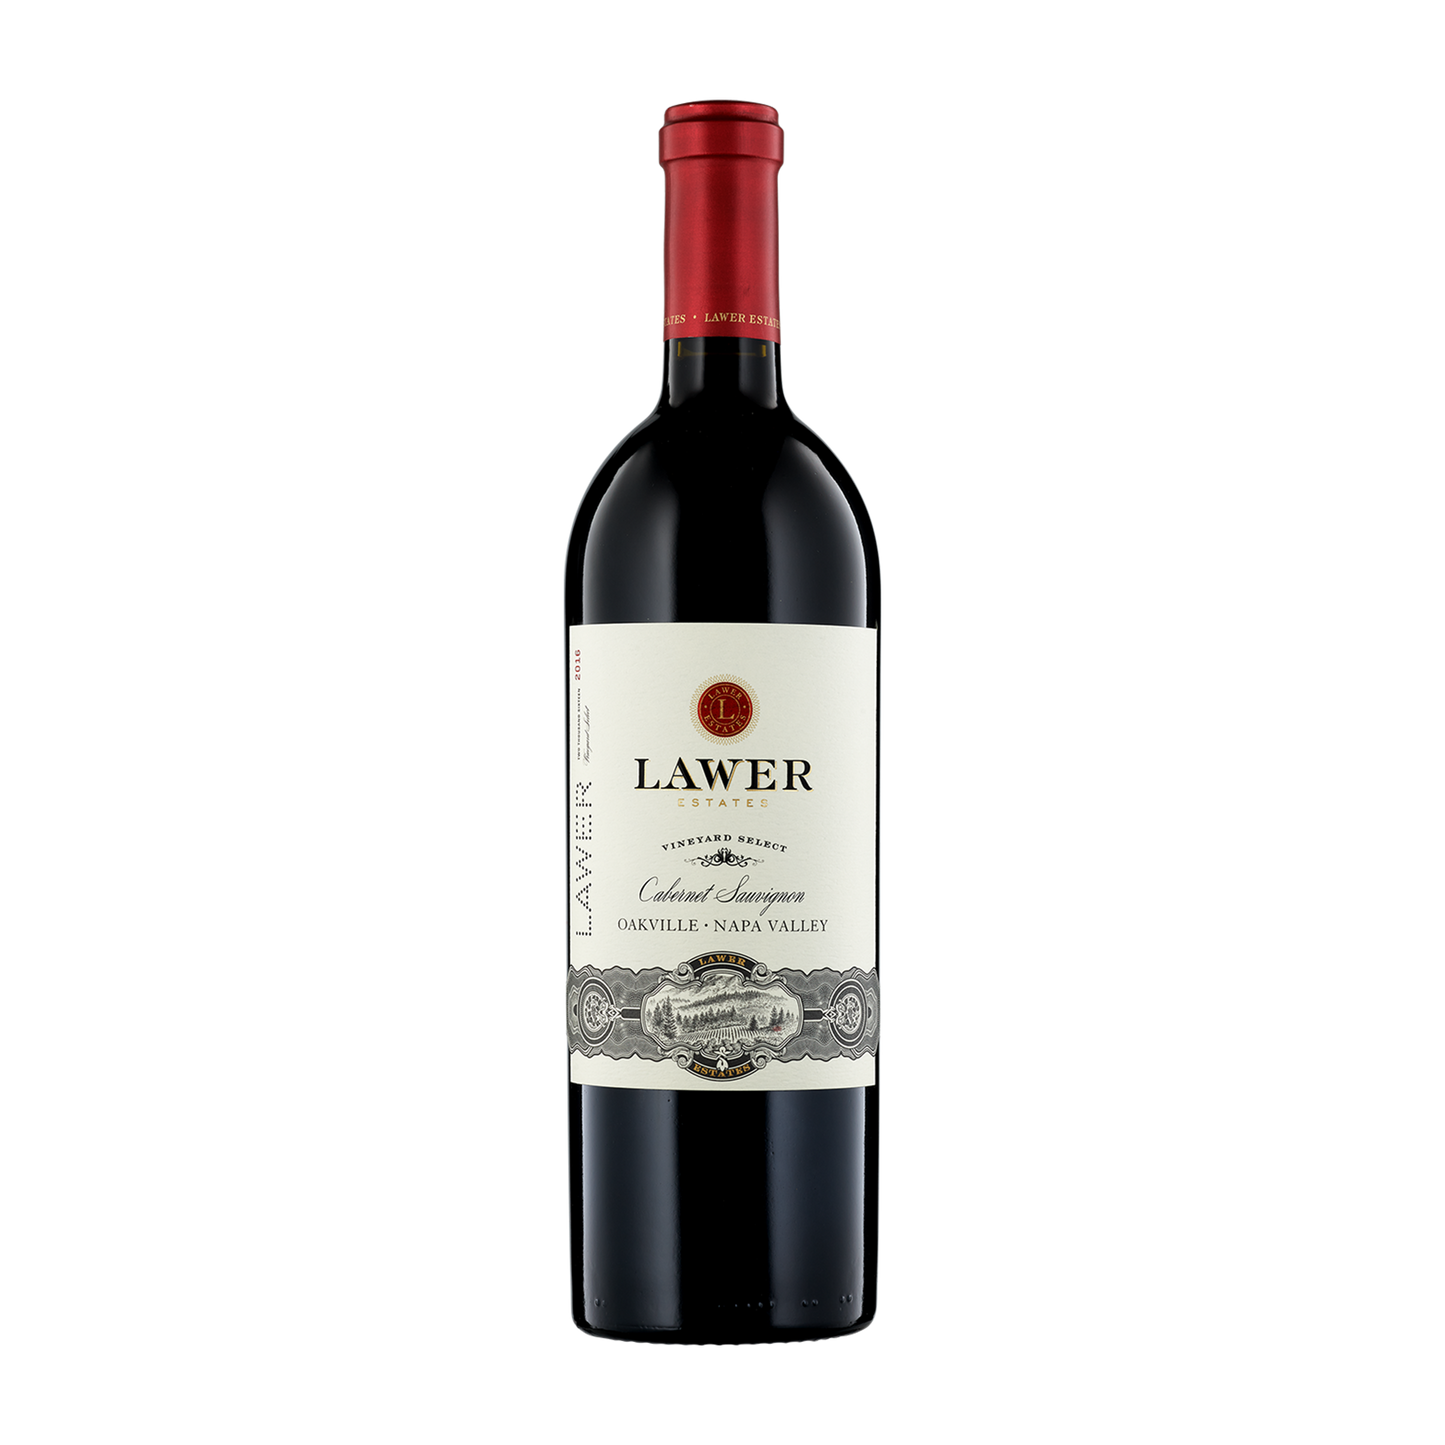 A bottle of Lawer Estates 2016 Cabernet Sauvignon